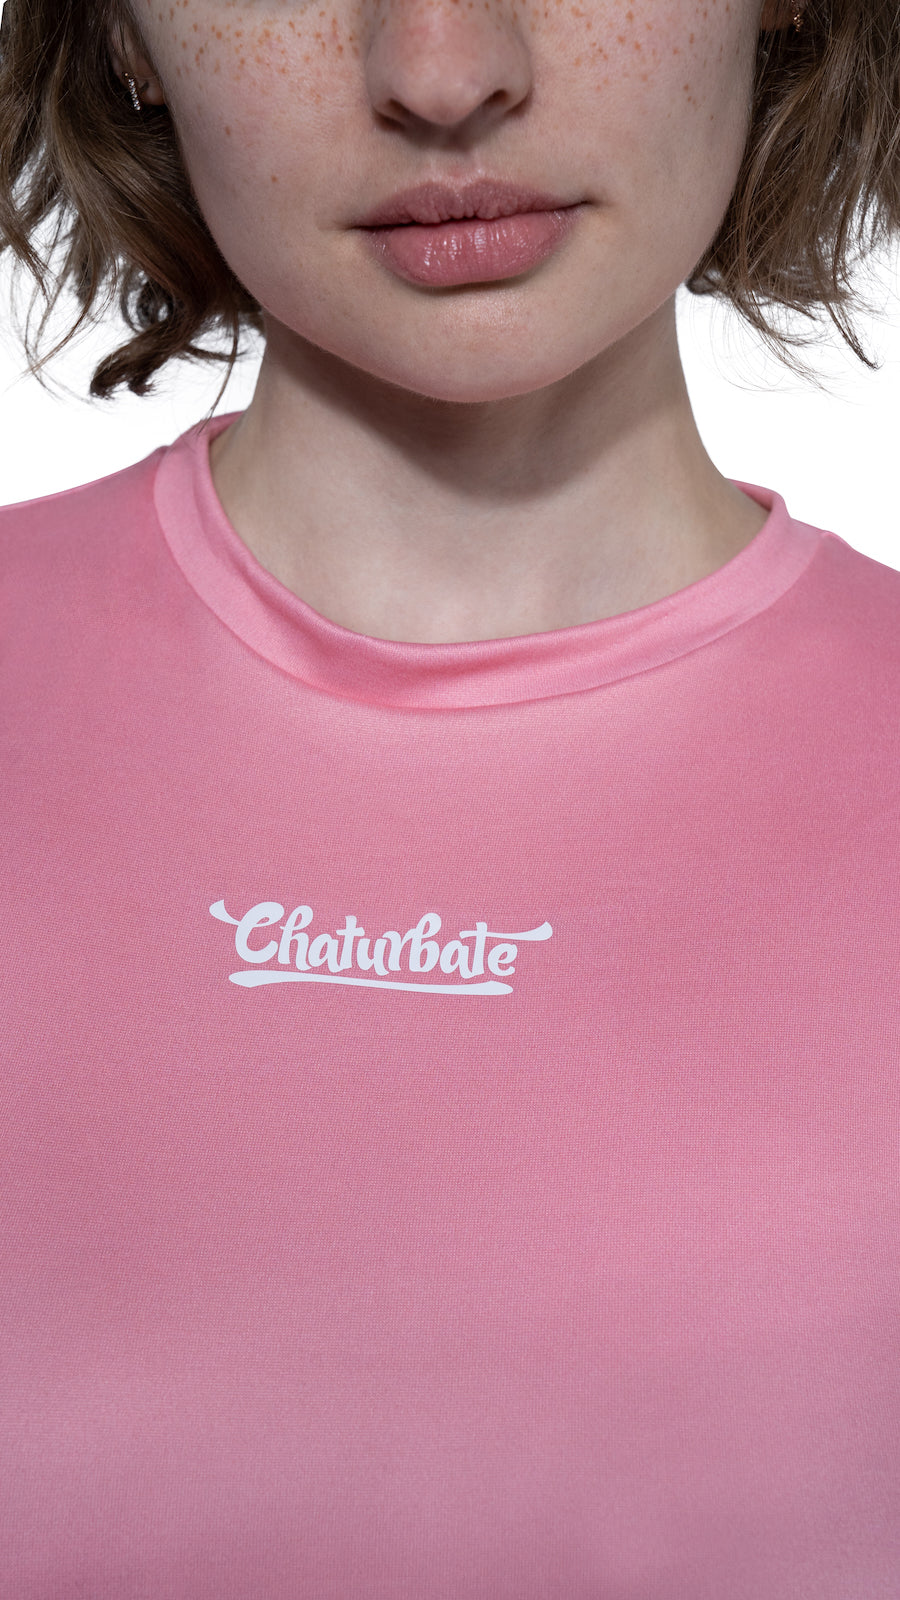 Women's Pink Long Sleeve Shirt